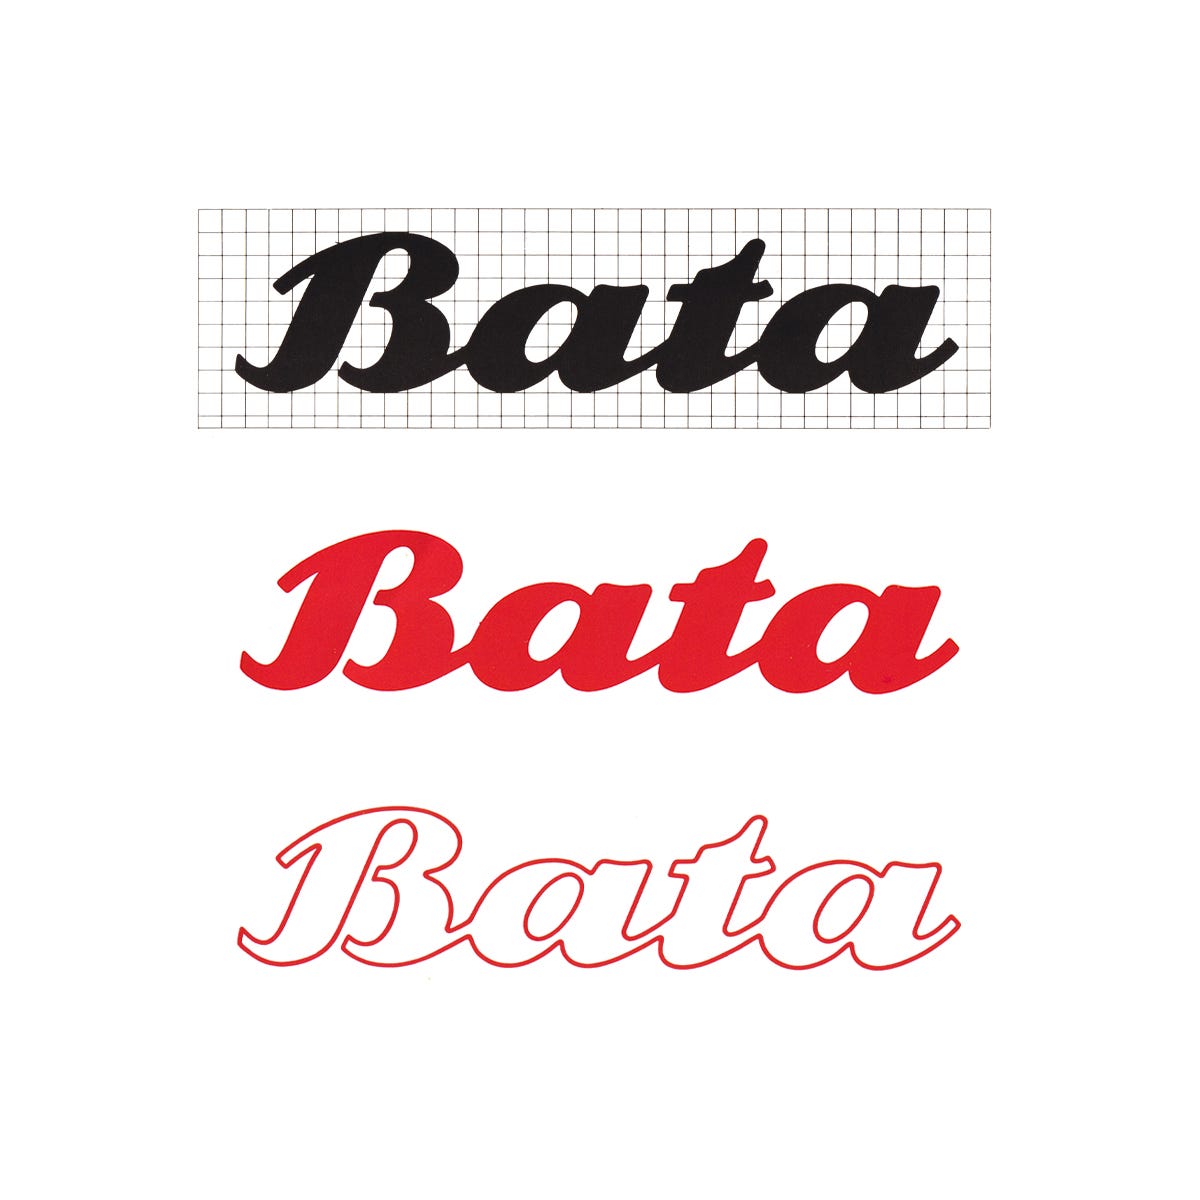 Design Research Unit's 1969 corporate identity for Bata.